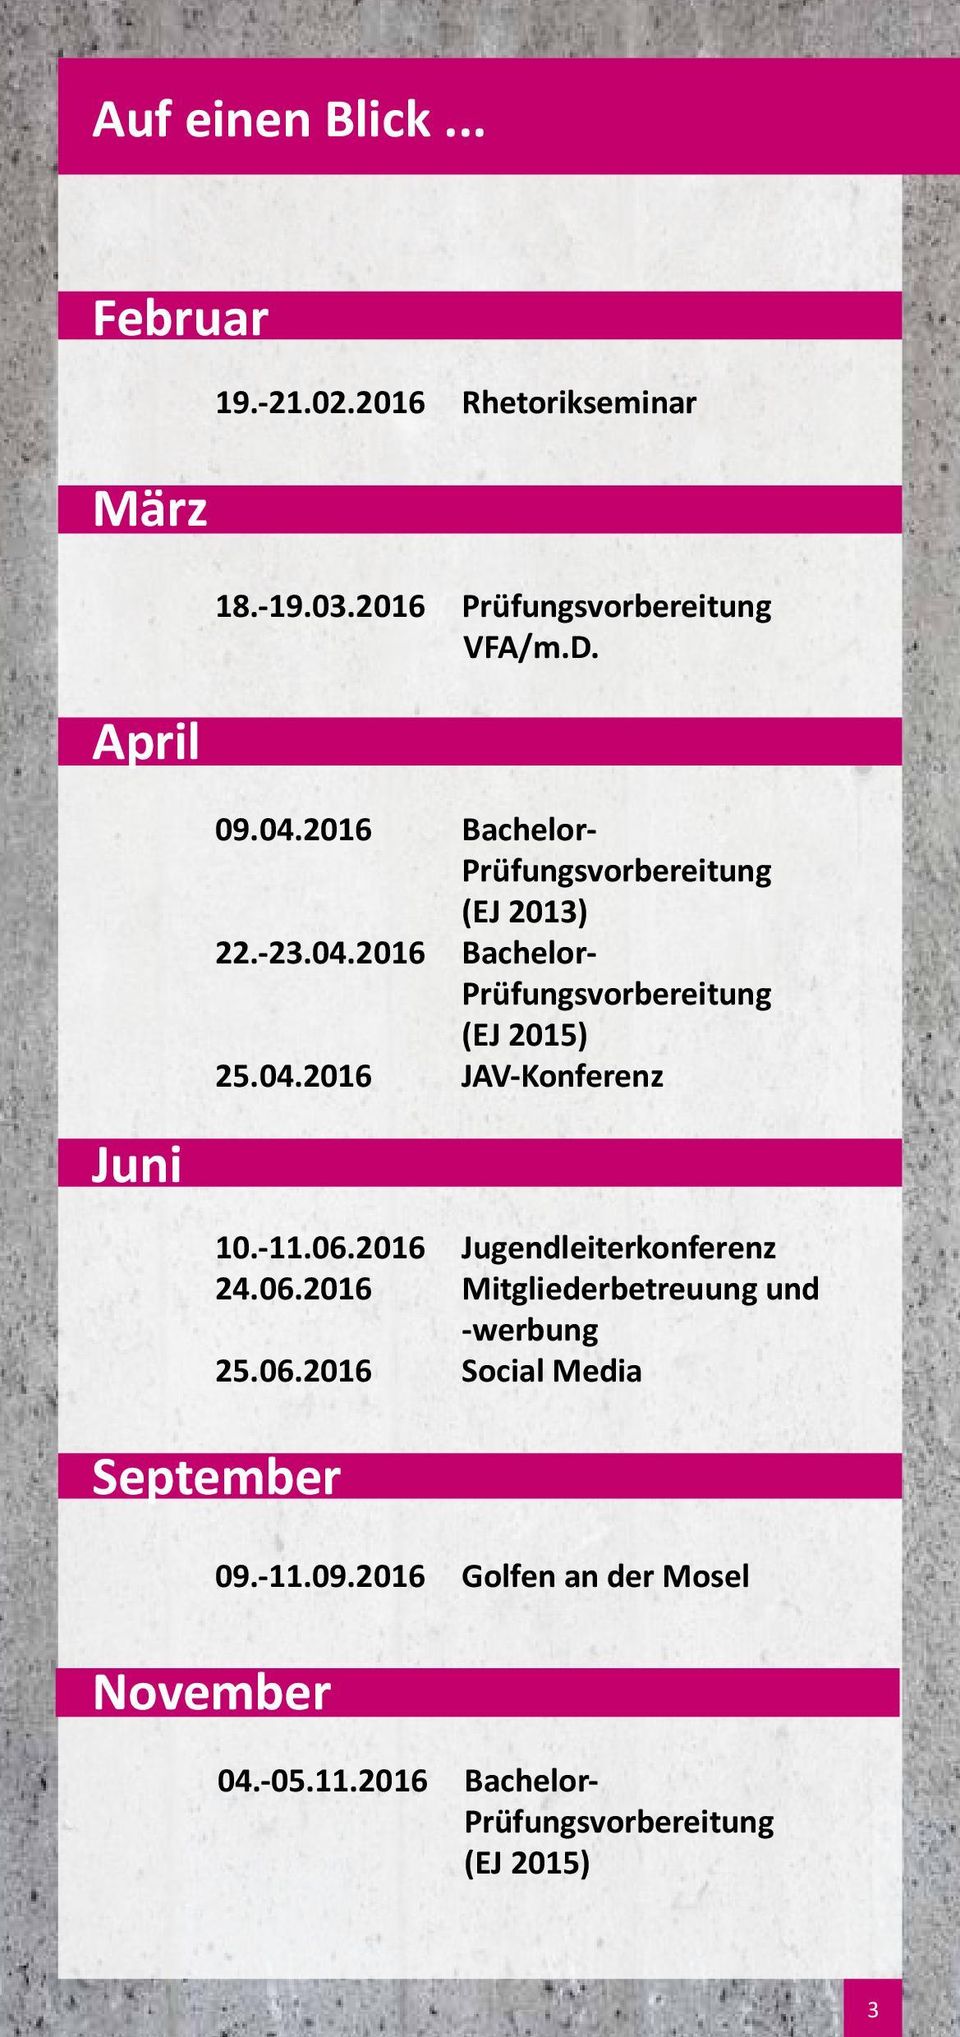 -11.06.2016 Jugendleiterkonferenz 24.06.2016 Mitgliederbetreuung und -werbung 25.06.2016 Social Media September 09.